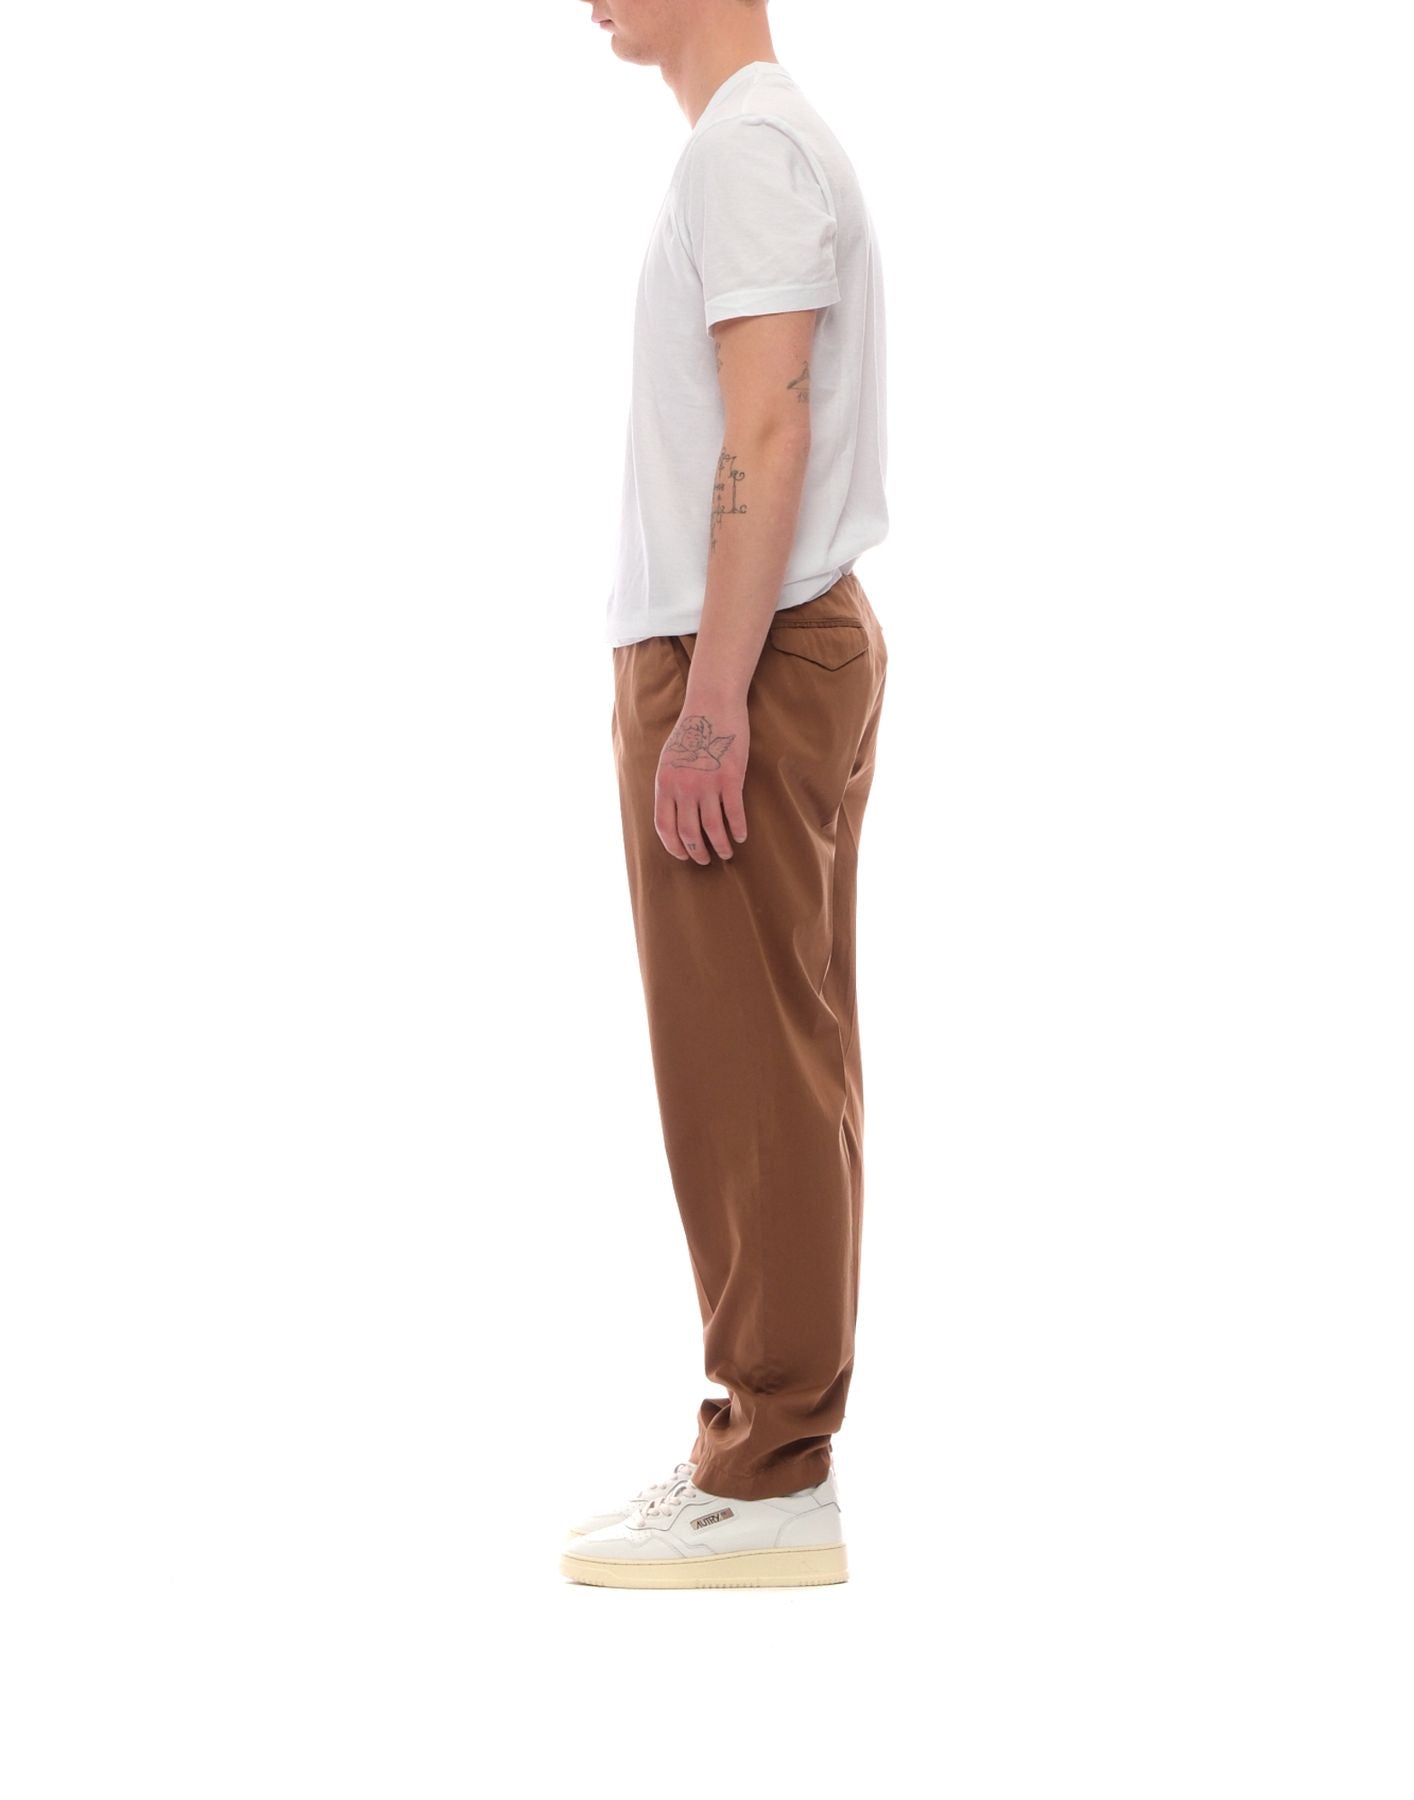 Trousers for men LA110251 CELLAR DOOR